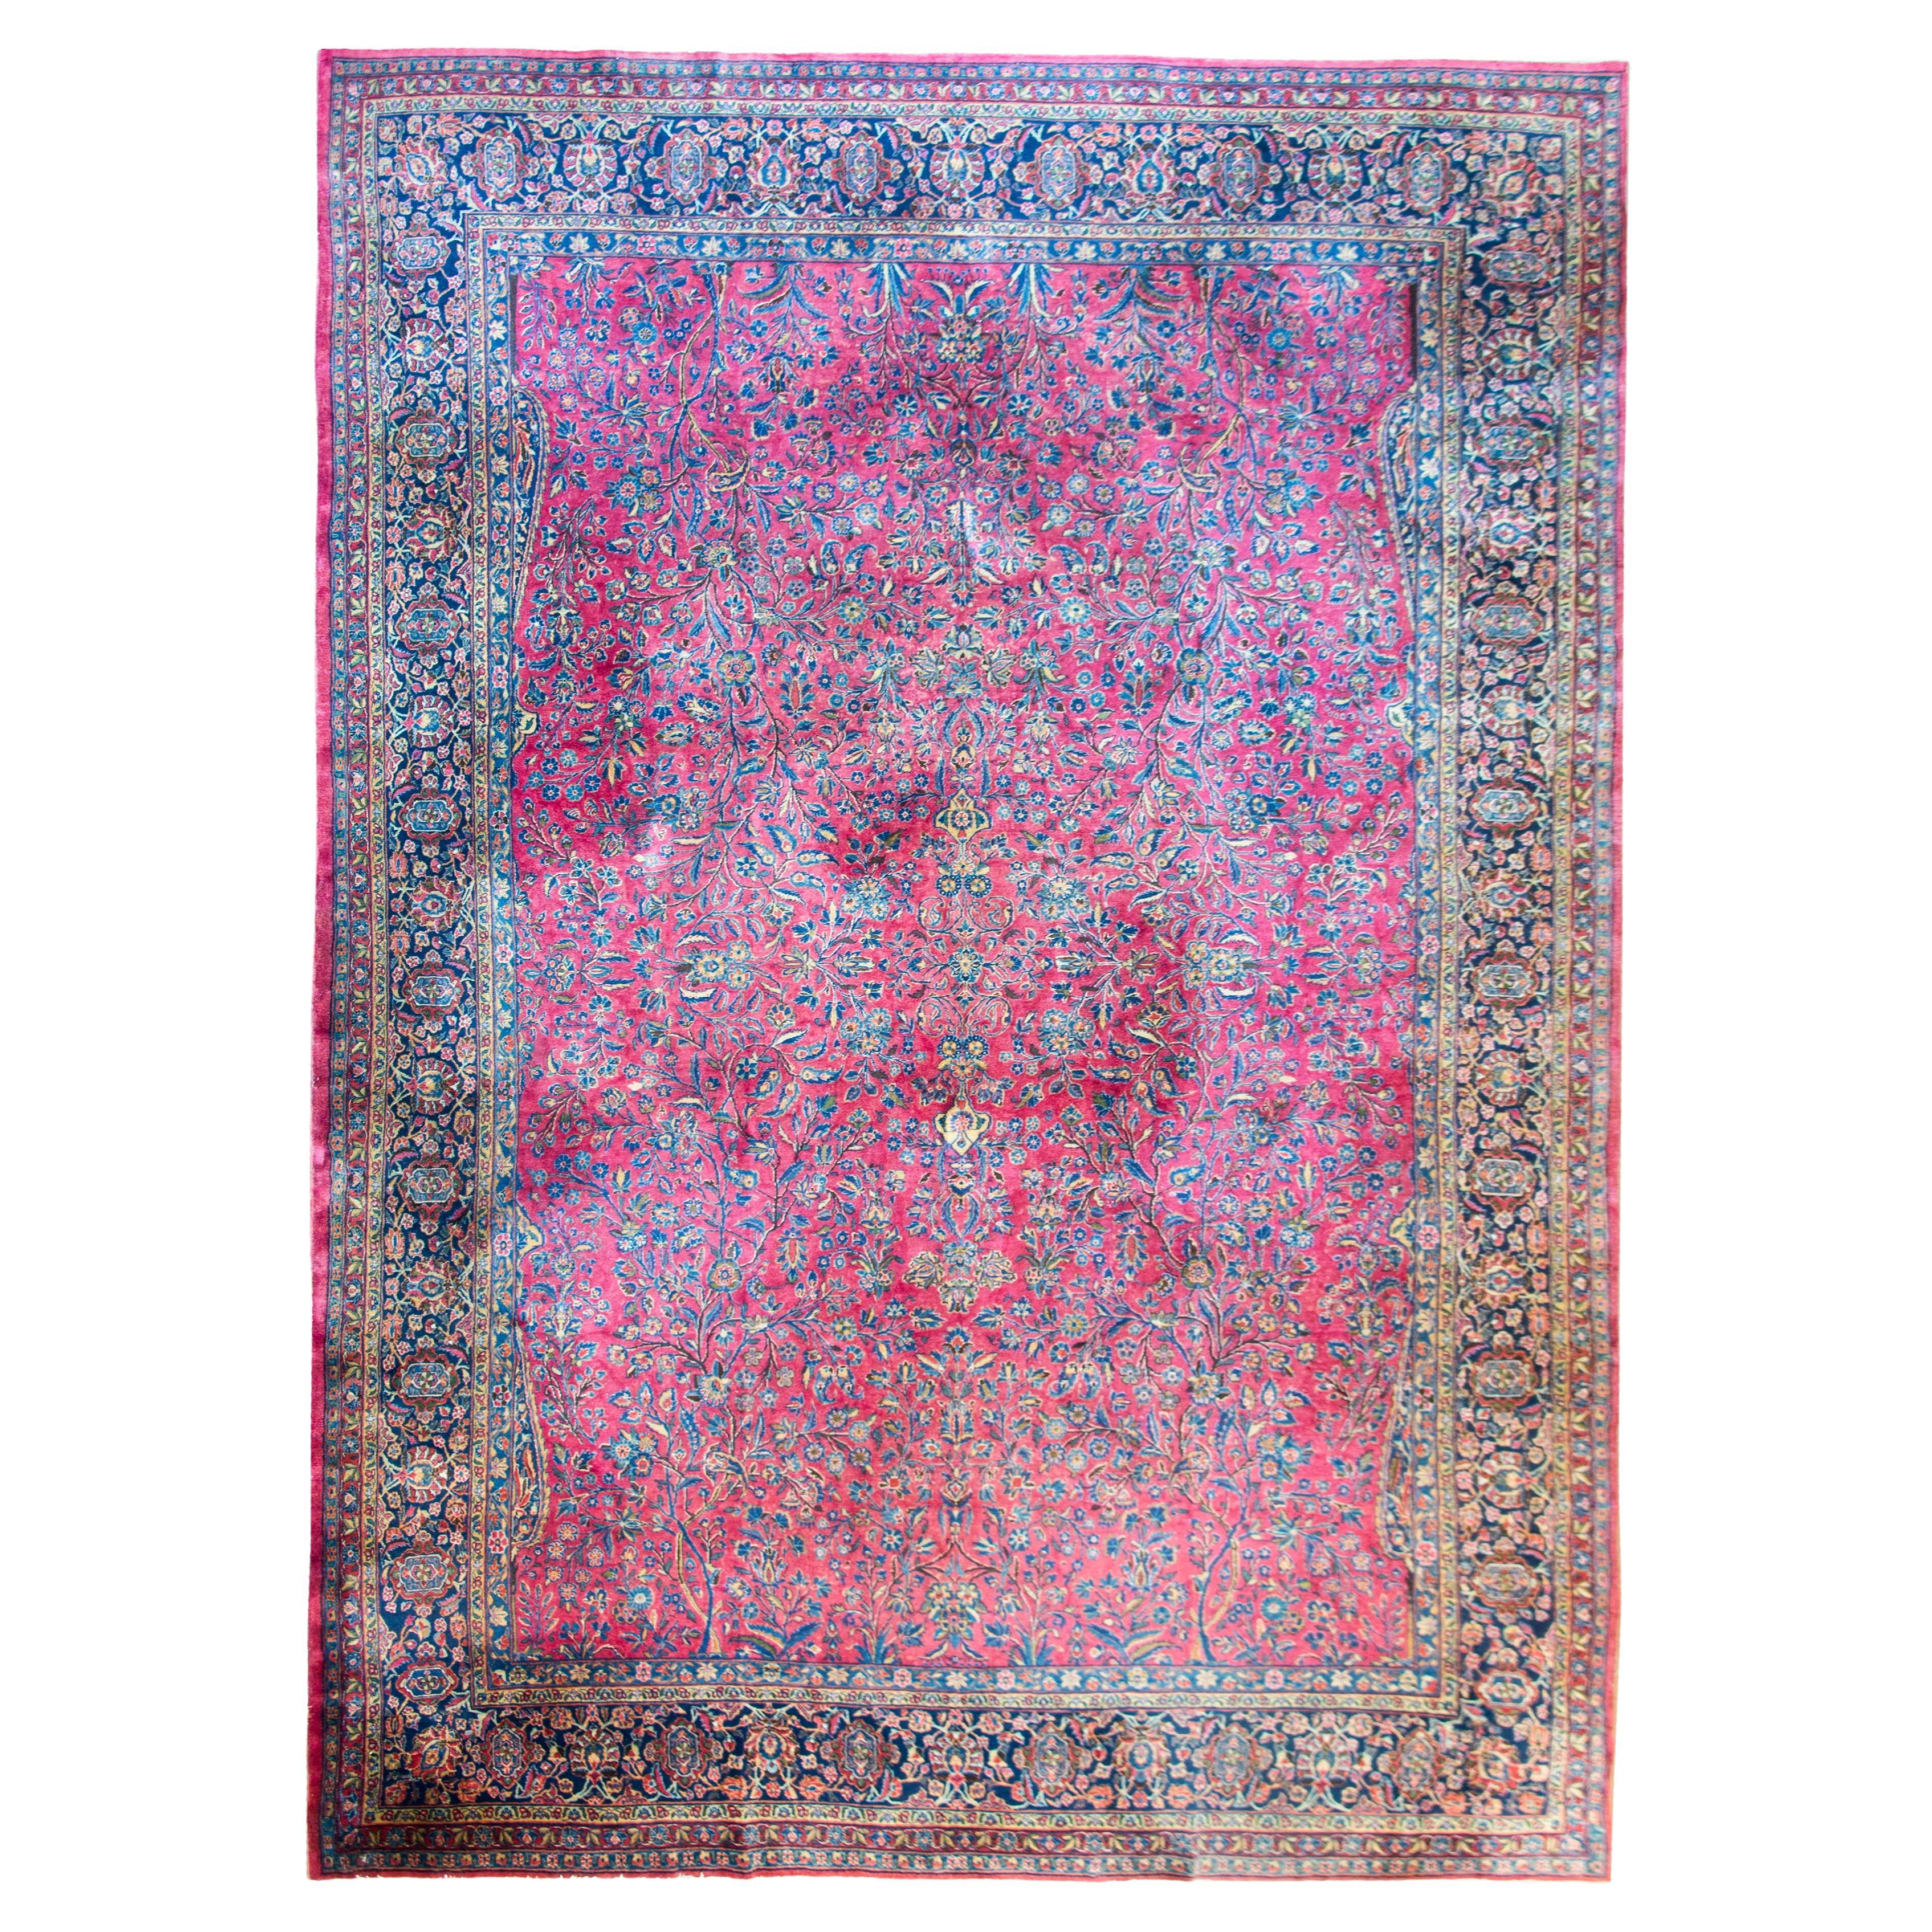 Persischer Kashan-Teppich des frühen 20. Jahrhunderts